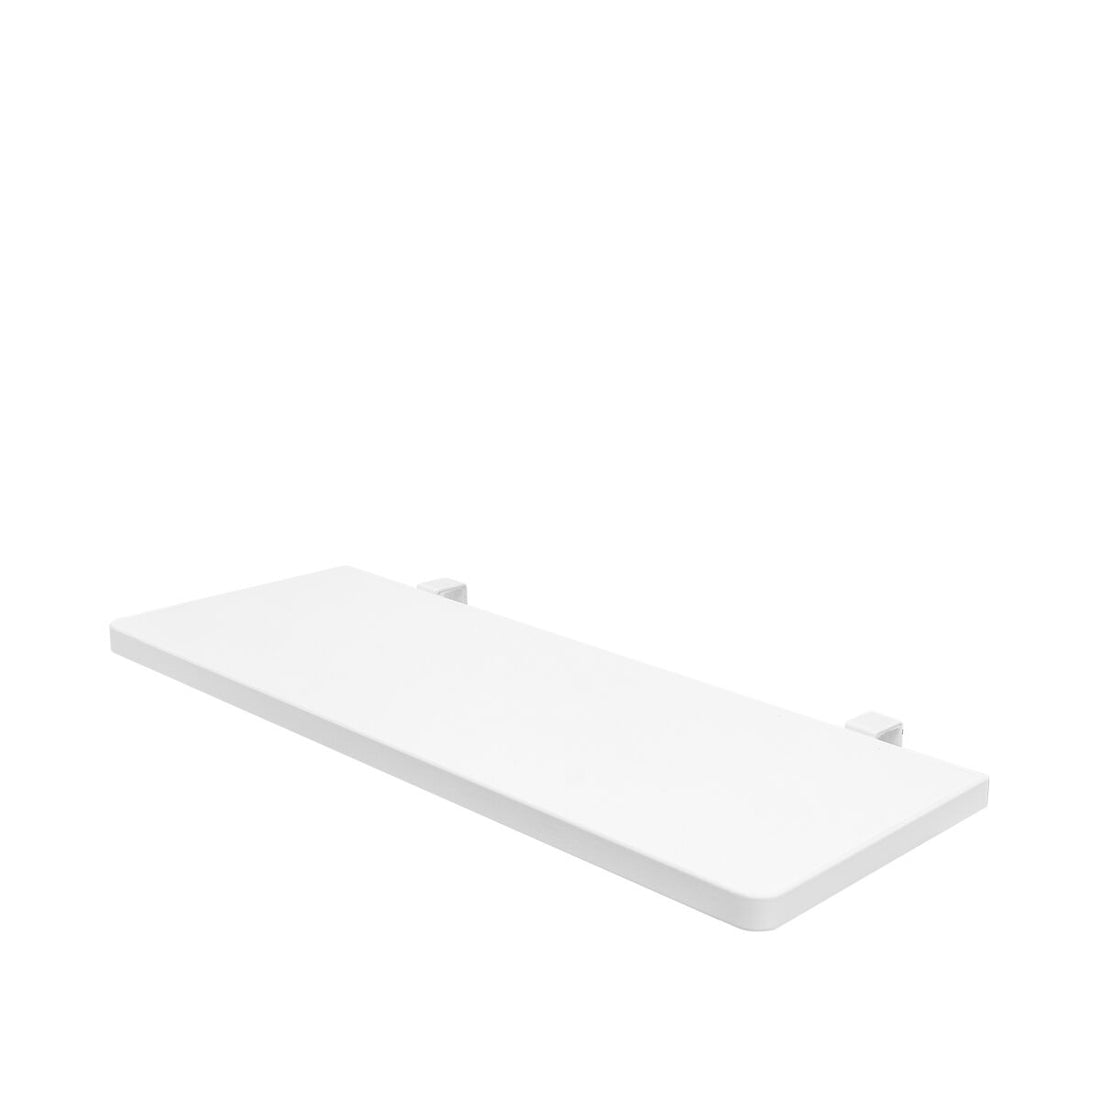 bopita-side-table-white-bopt-40014611- (1)